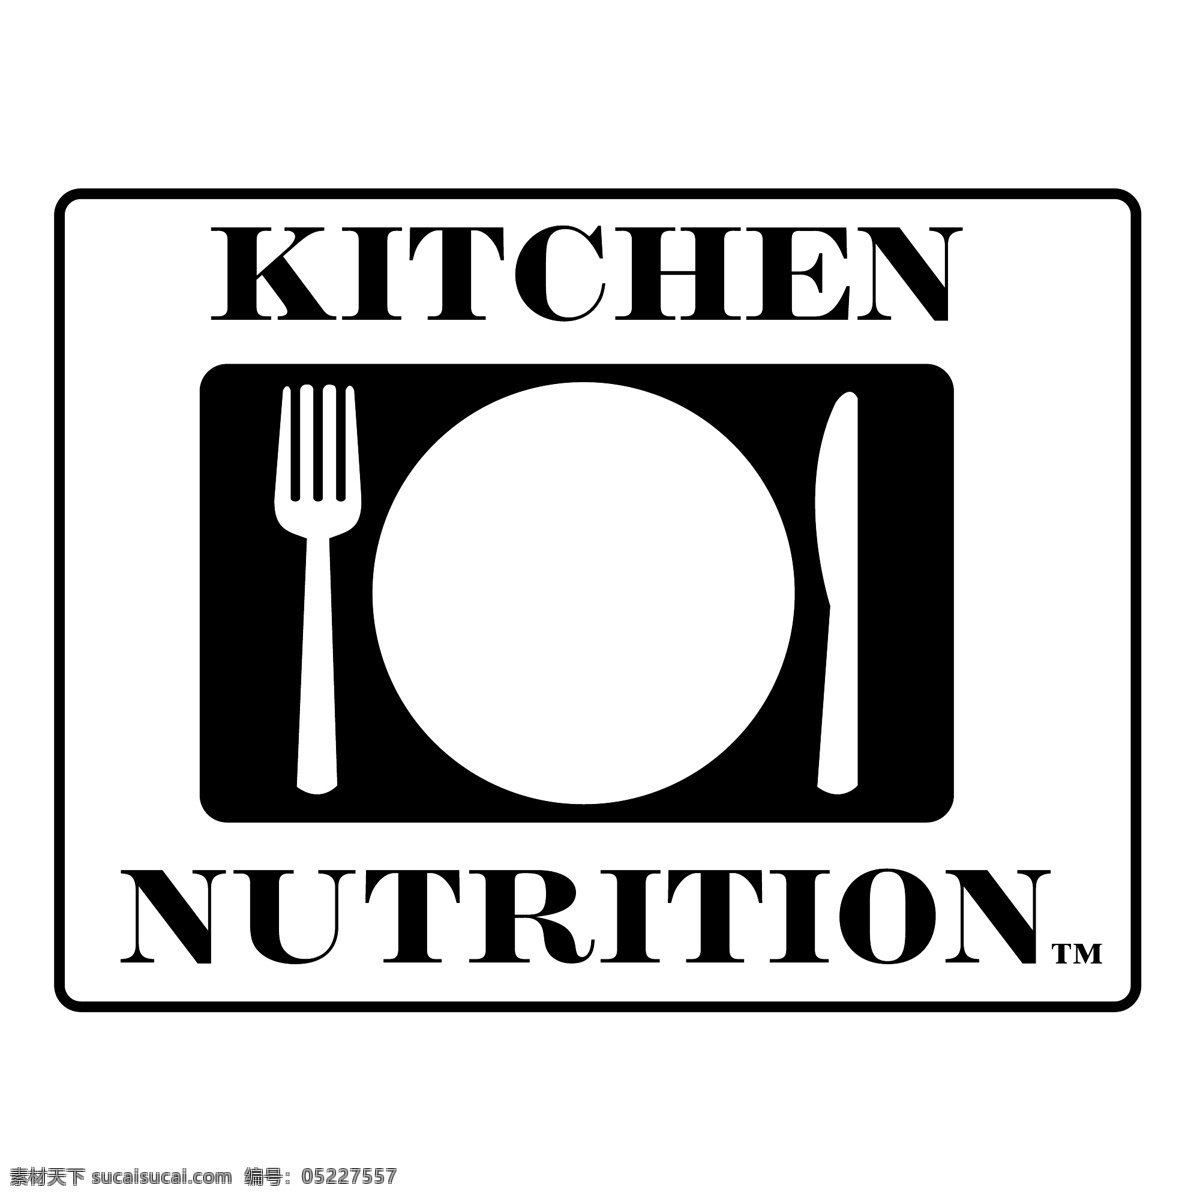 厨房里的营养 厨房 免费 营养 自由 厨房的营养 免费的厨房 艺术 矢量 图形 载体 在厨房里 建筑家居